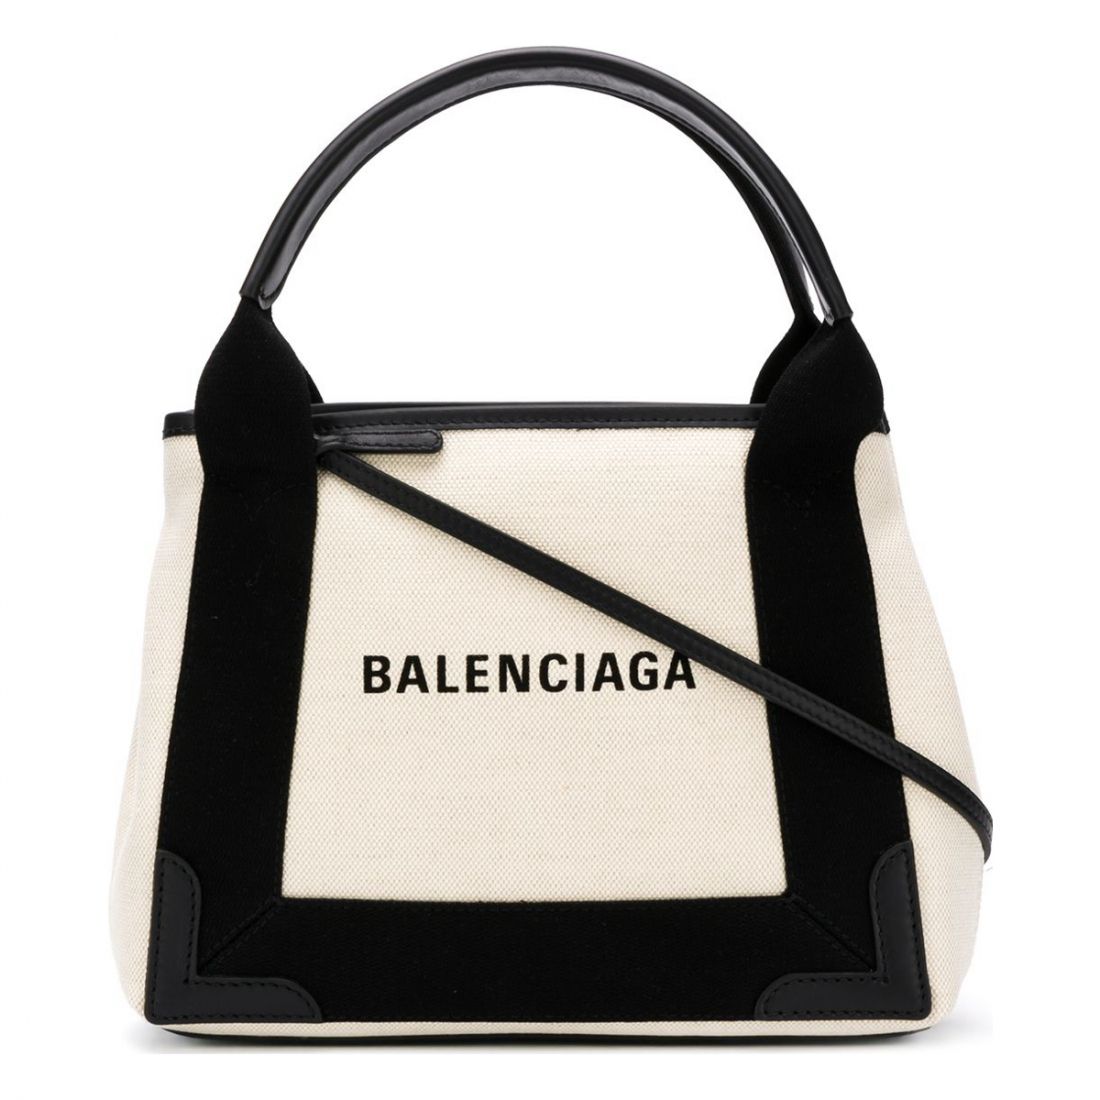 Balenciaga - Sac Cabas 'Cabas XS' pour Femmes